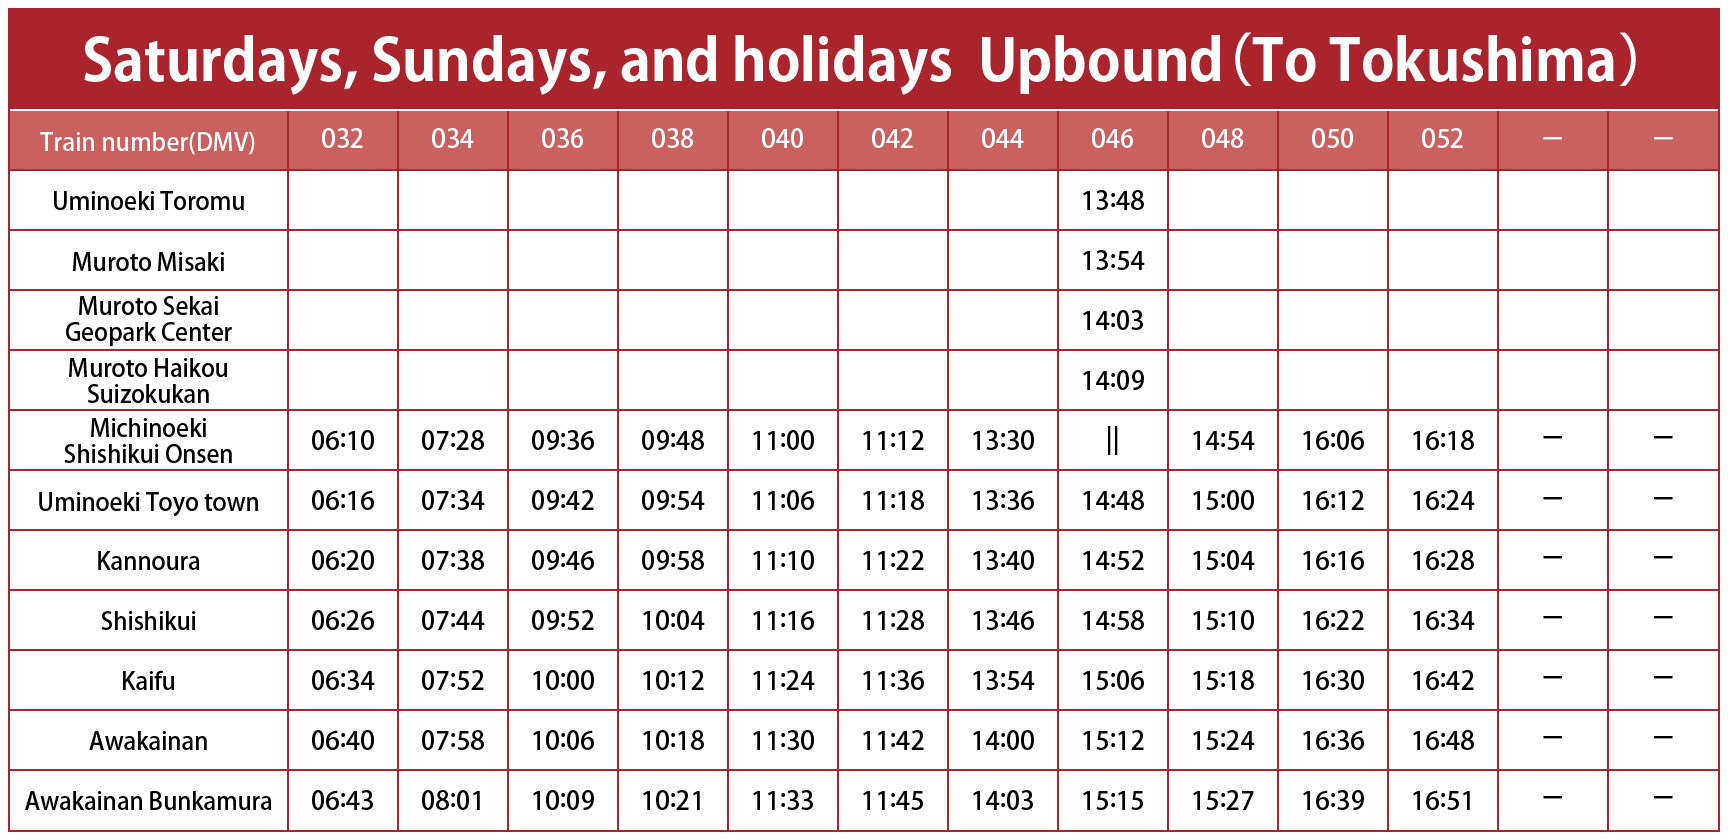 Timetable Saturdays, Sundays, and holidays Upbound (To Tokushima)